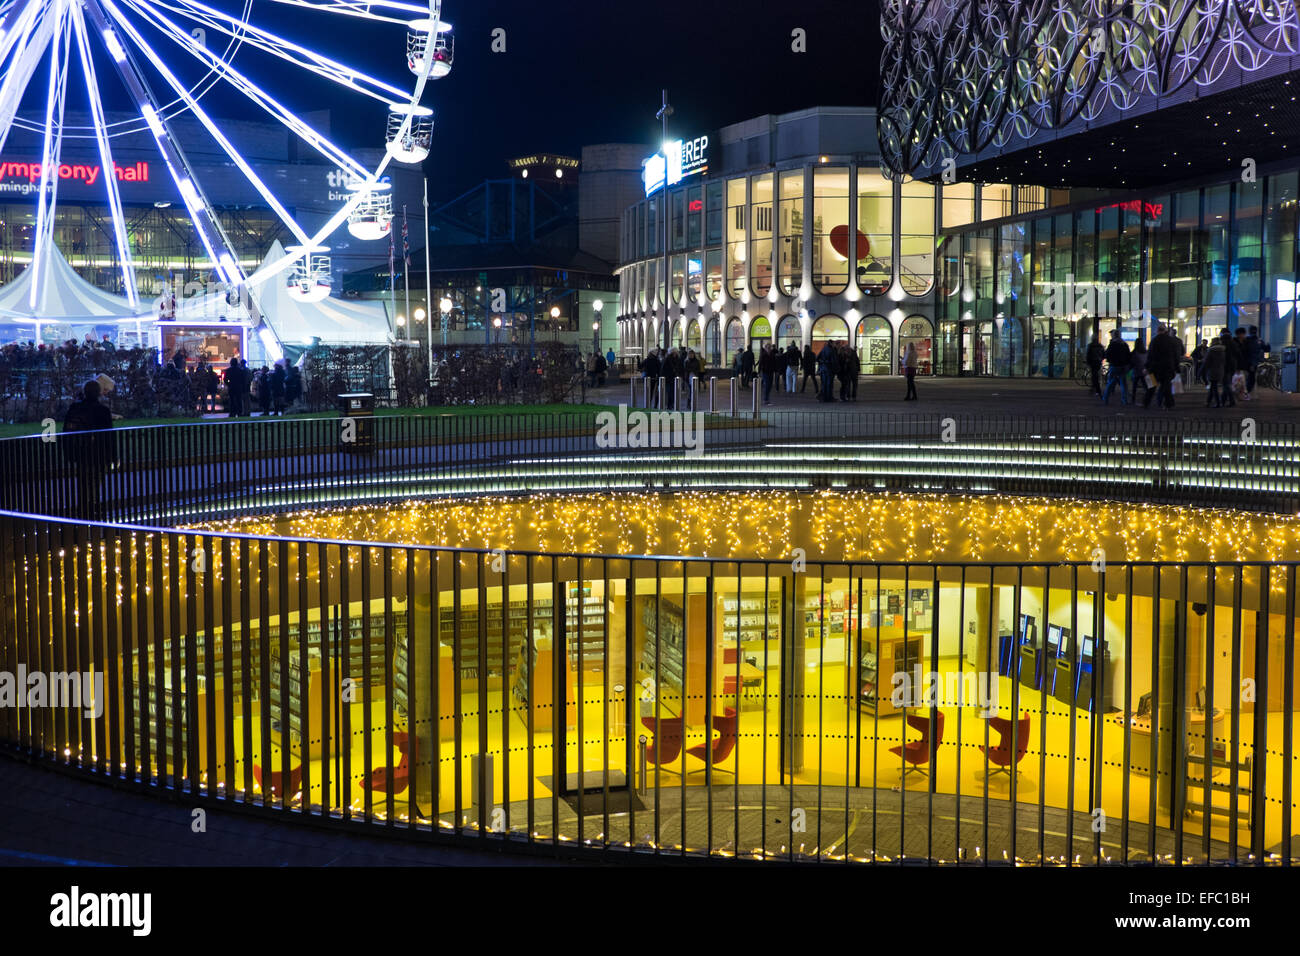 Weihnachtsfeiern im Centenary Square, Birmingham. Das große Rad außerhalb der Library of Birmingham. Stockfoto